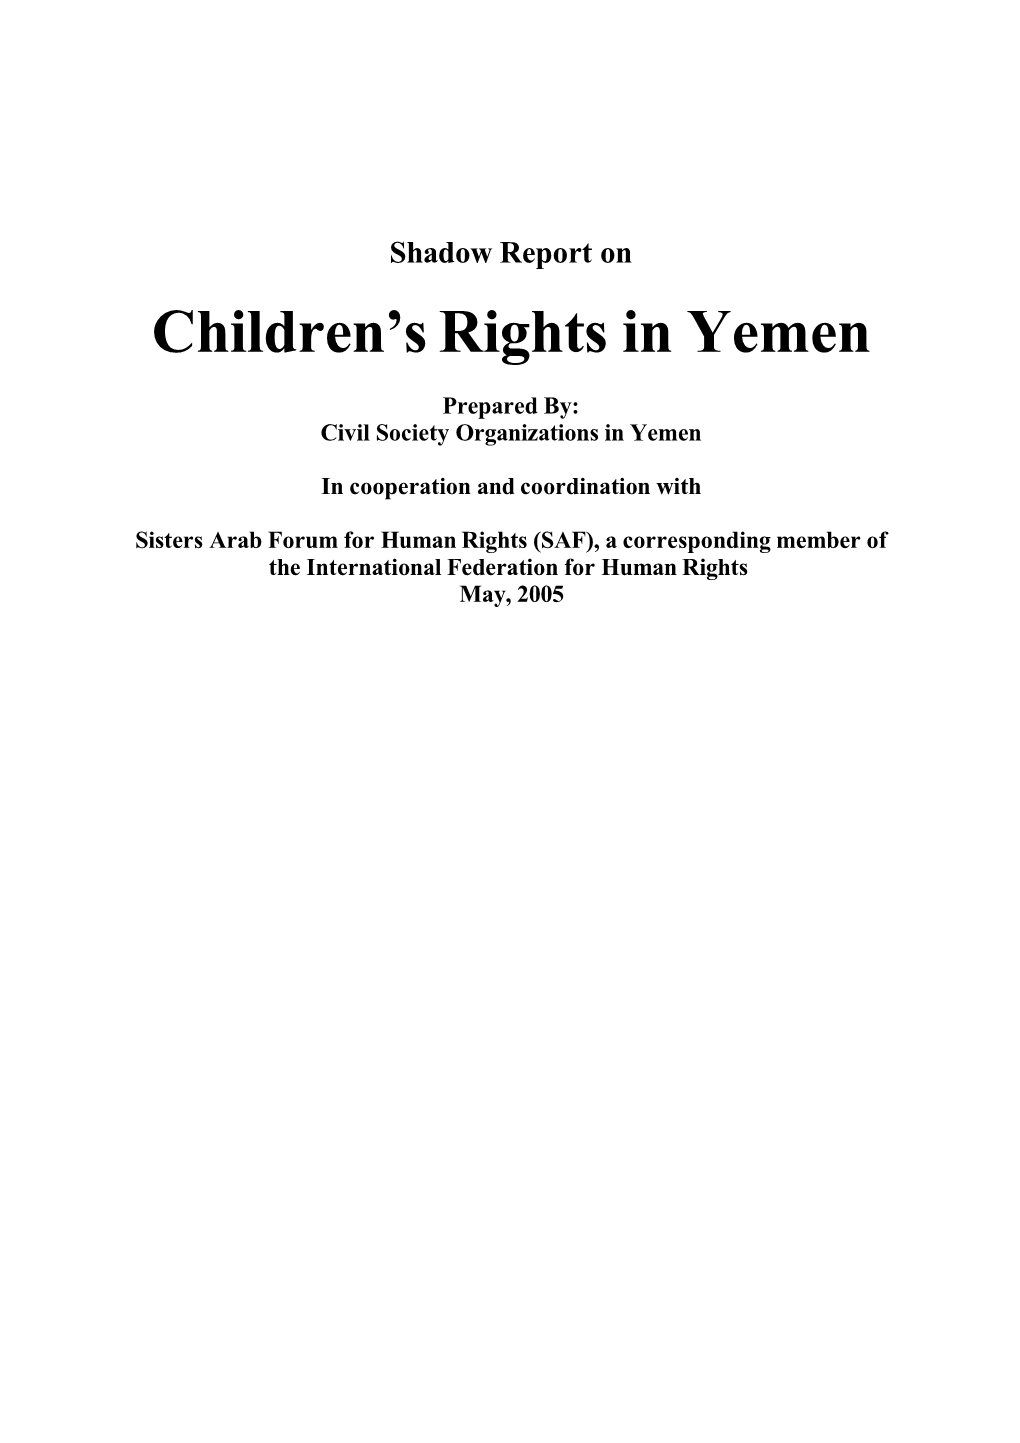 Children's Rights in Yemen